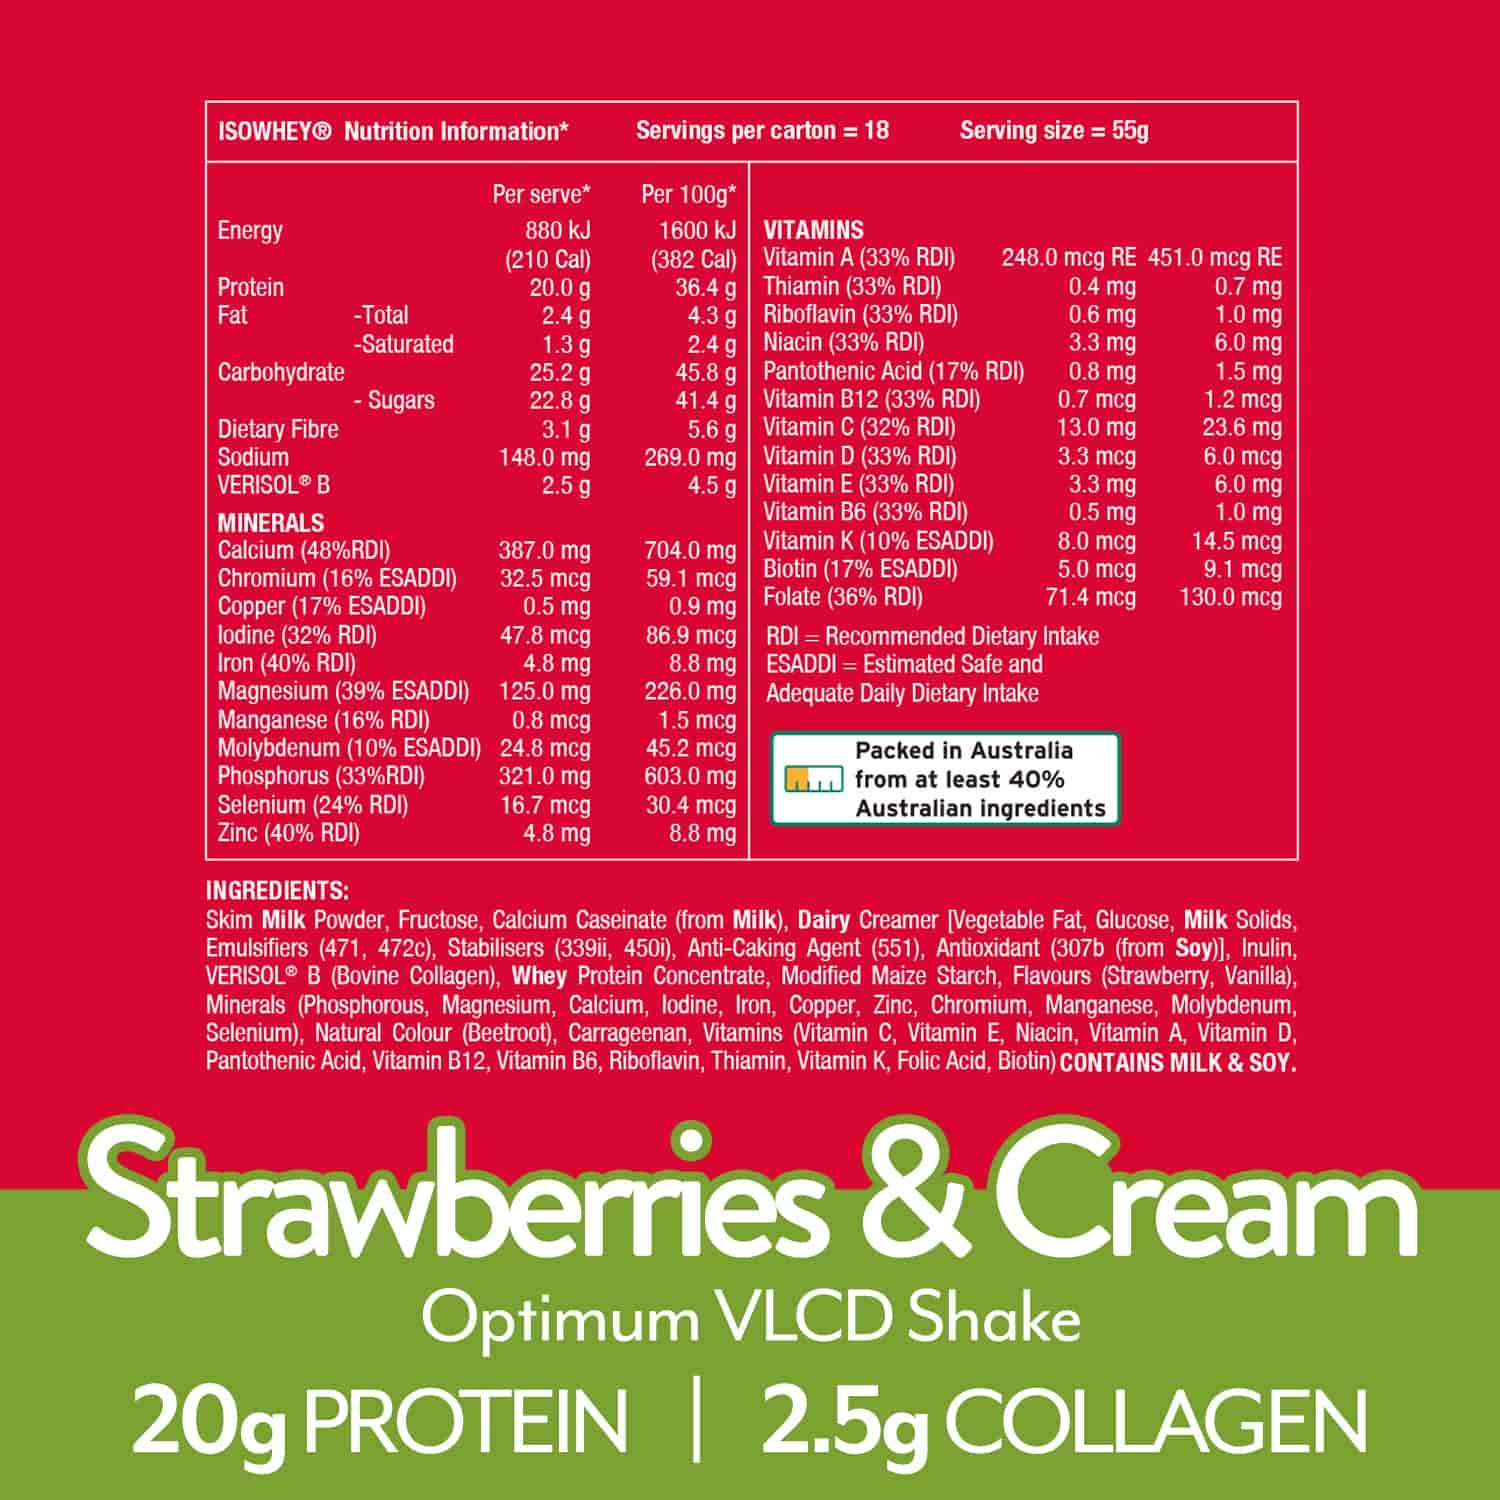 IsoWhey Optimum VLCD Strawberries & Cream 18x55g nutritional information